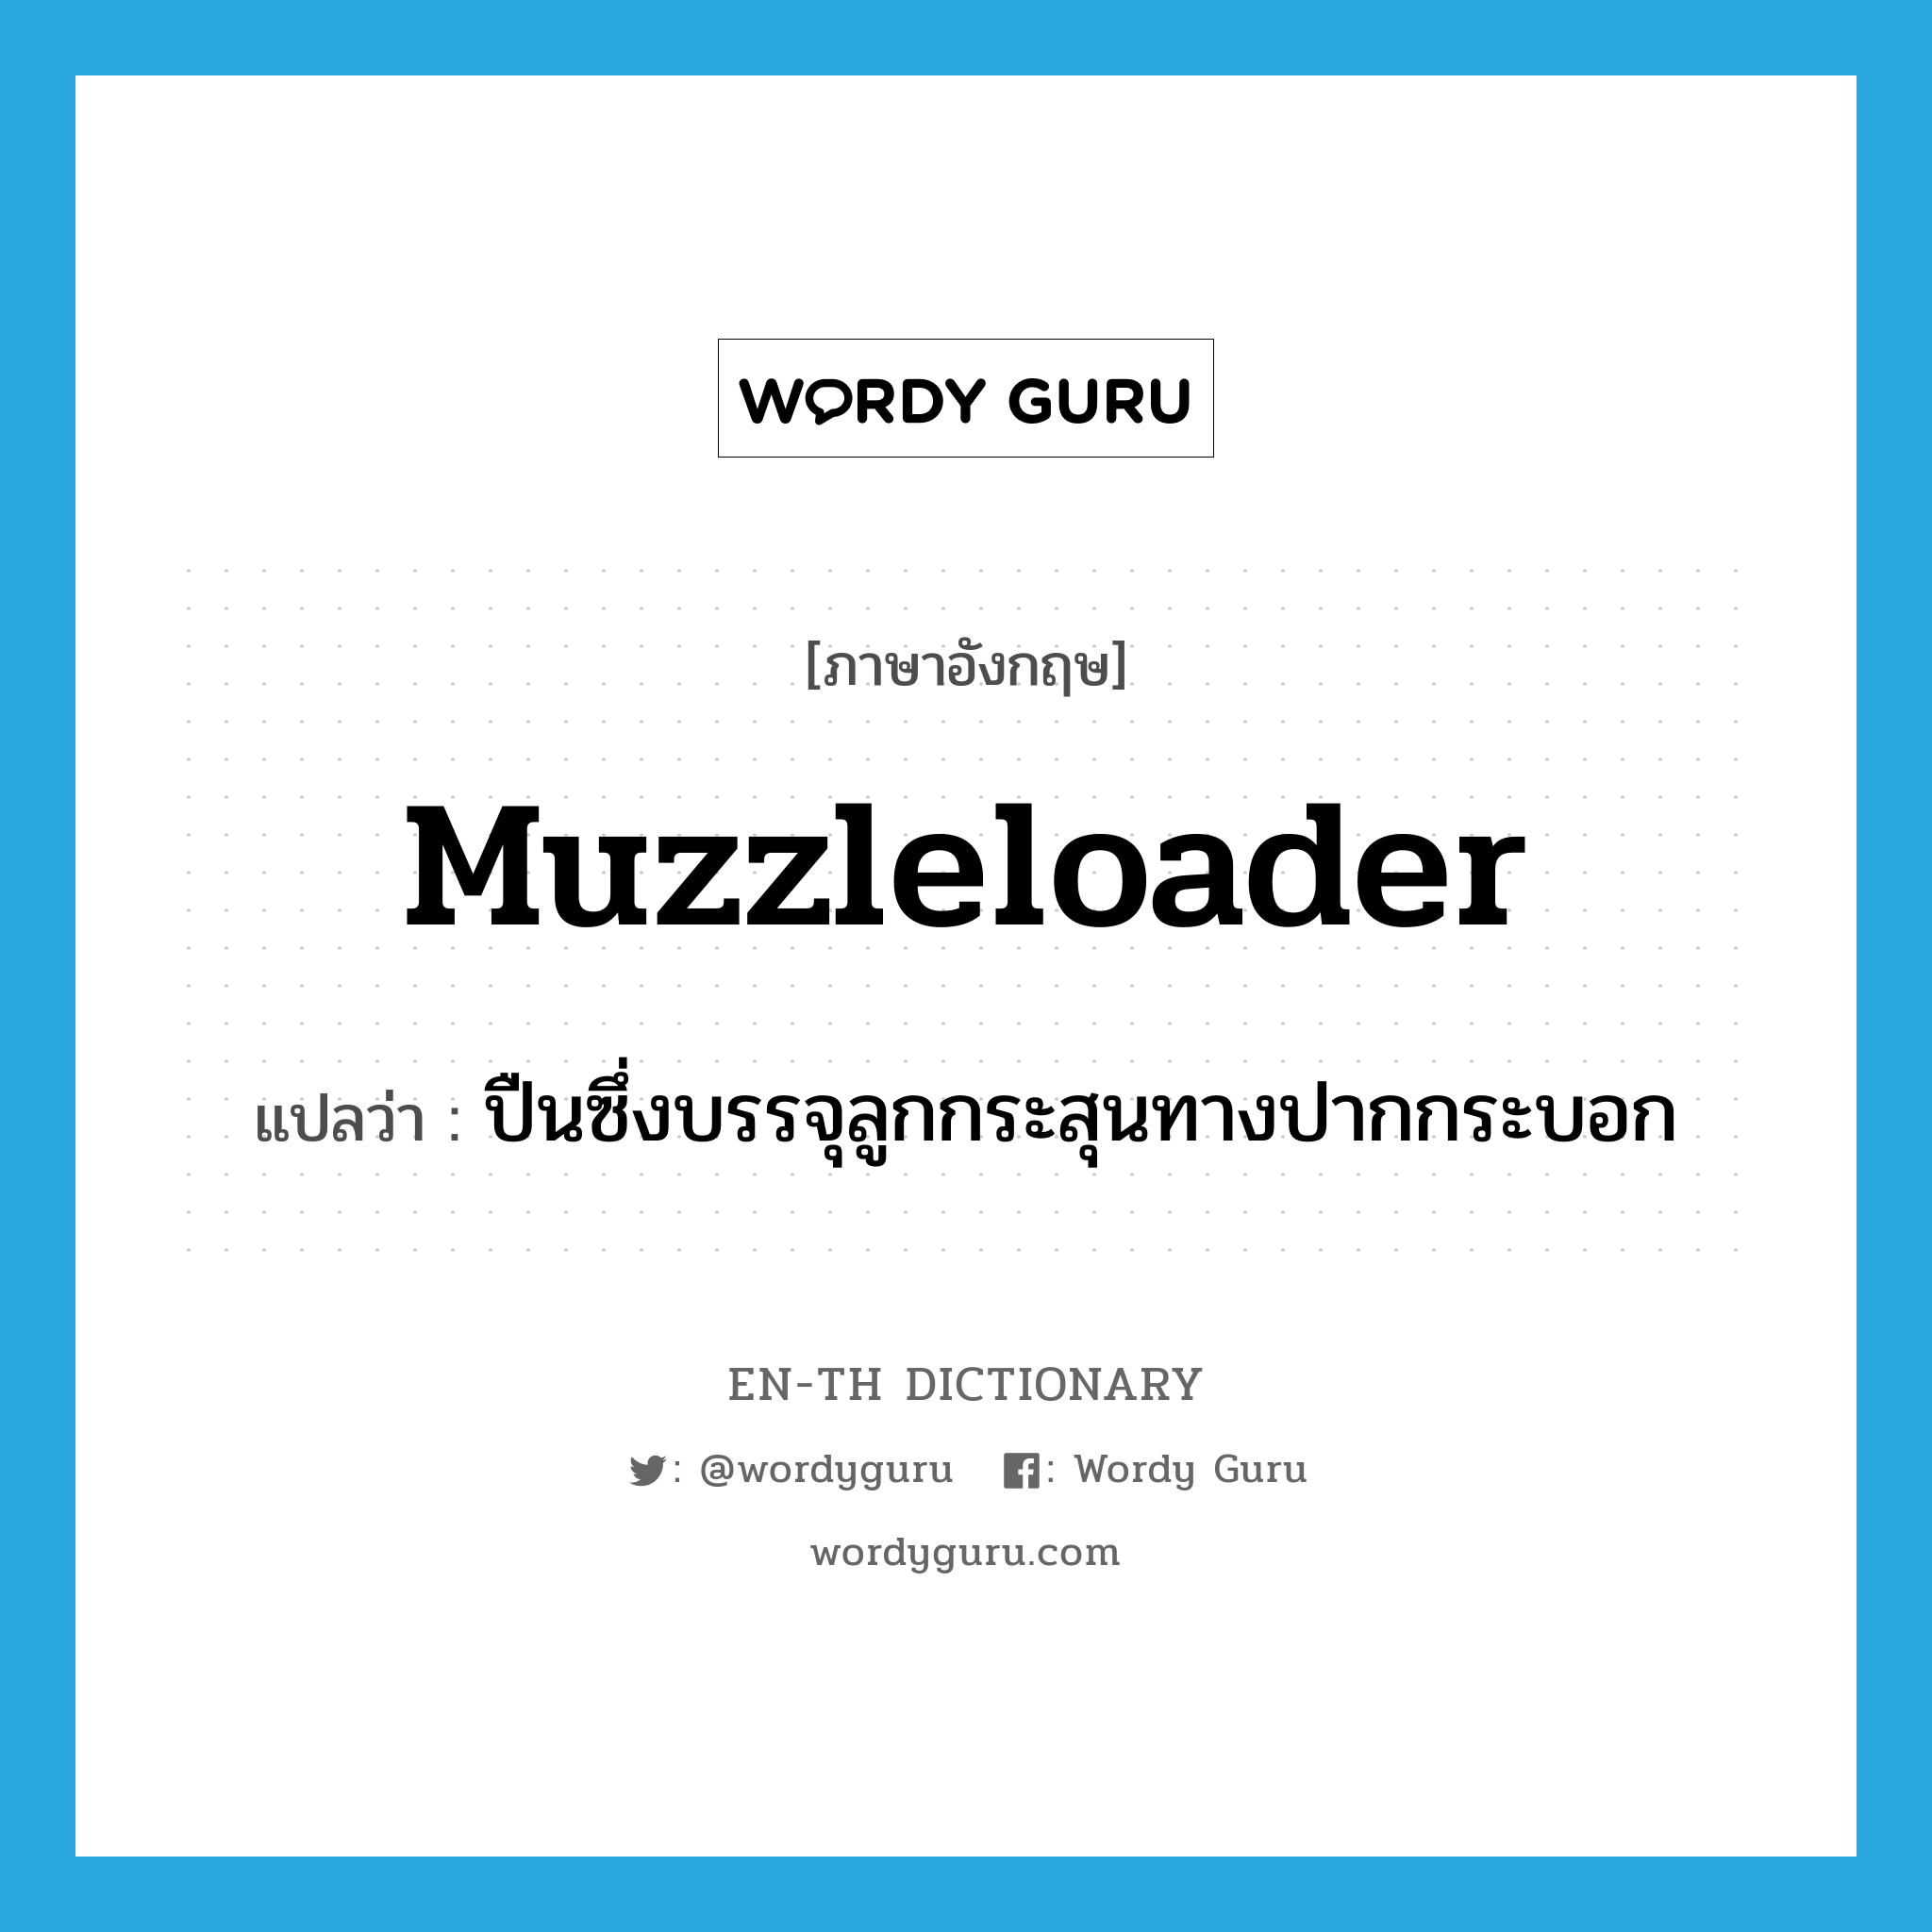 muzzleloader แปลว่า?, คำศัพท์ภาษาอังกฤษ muzzleloader แปลว่า ปืนซึ่งบรรจุลูกกระสุนทางปากกระบอก ประเภท N หมวด N